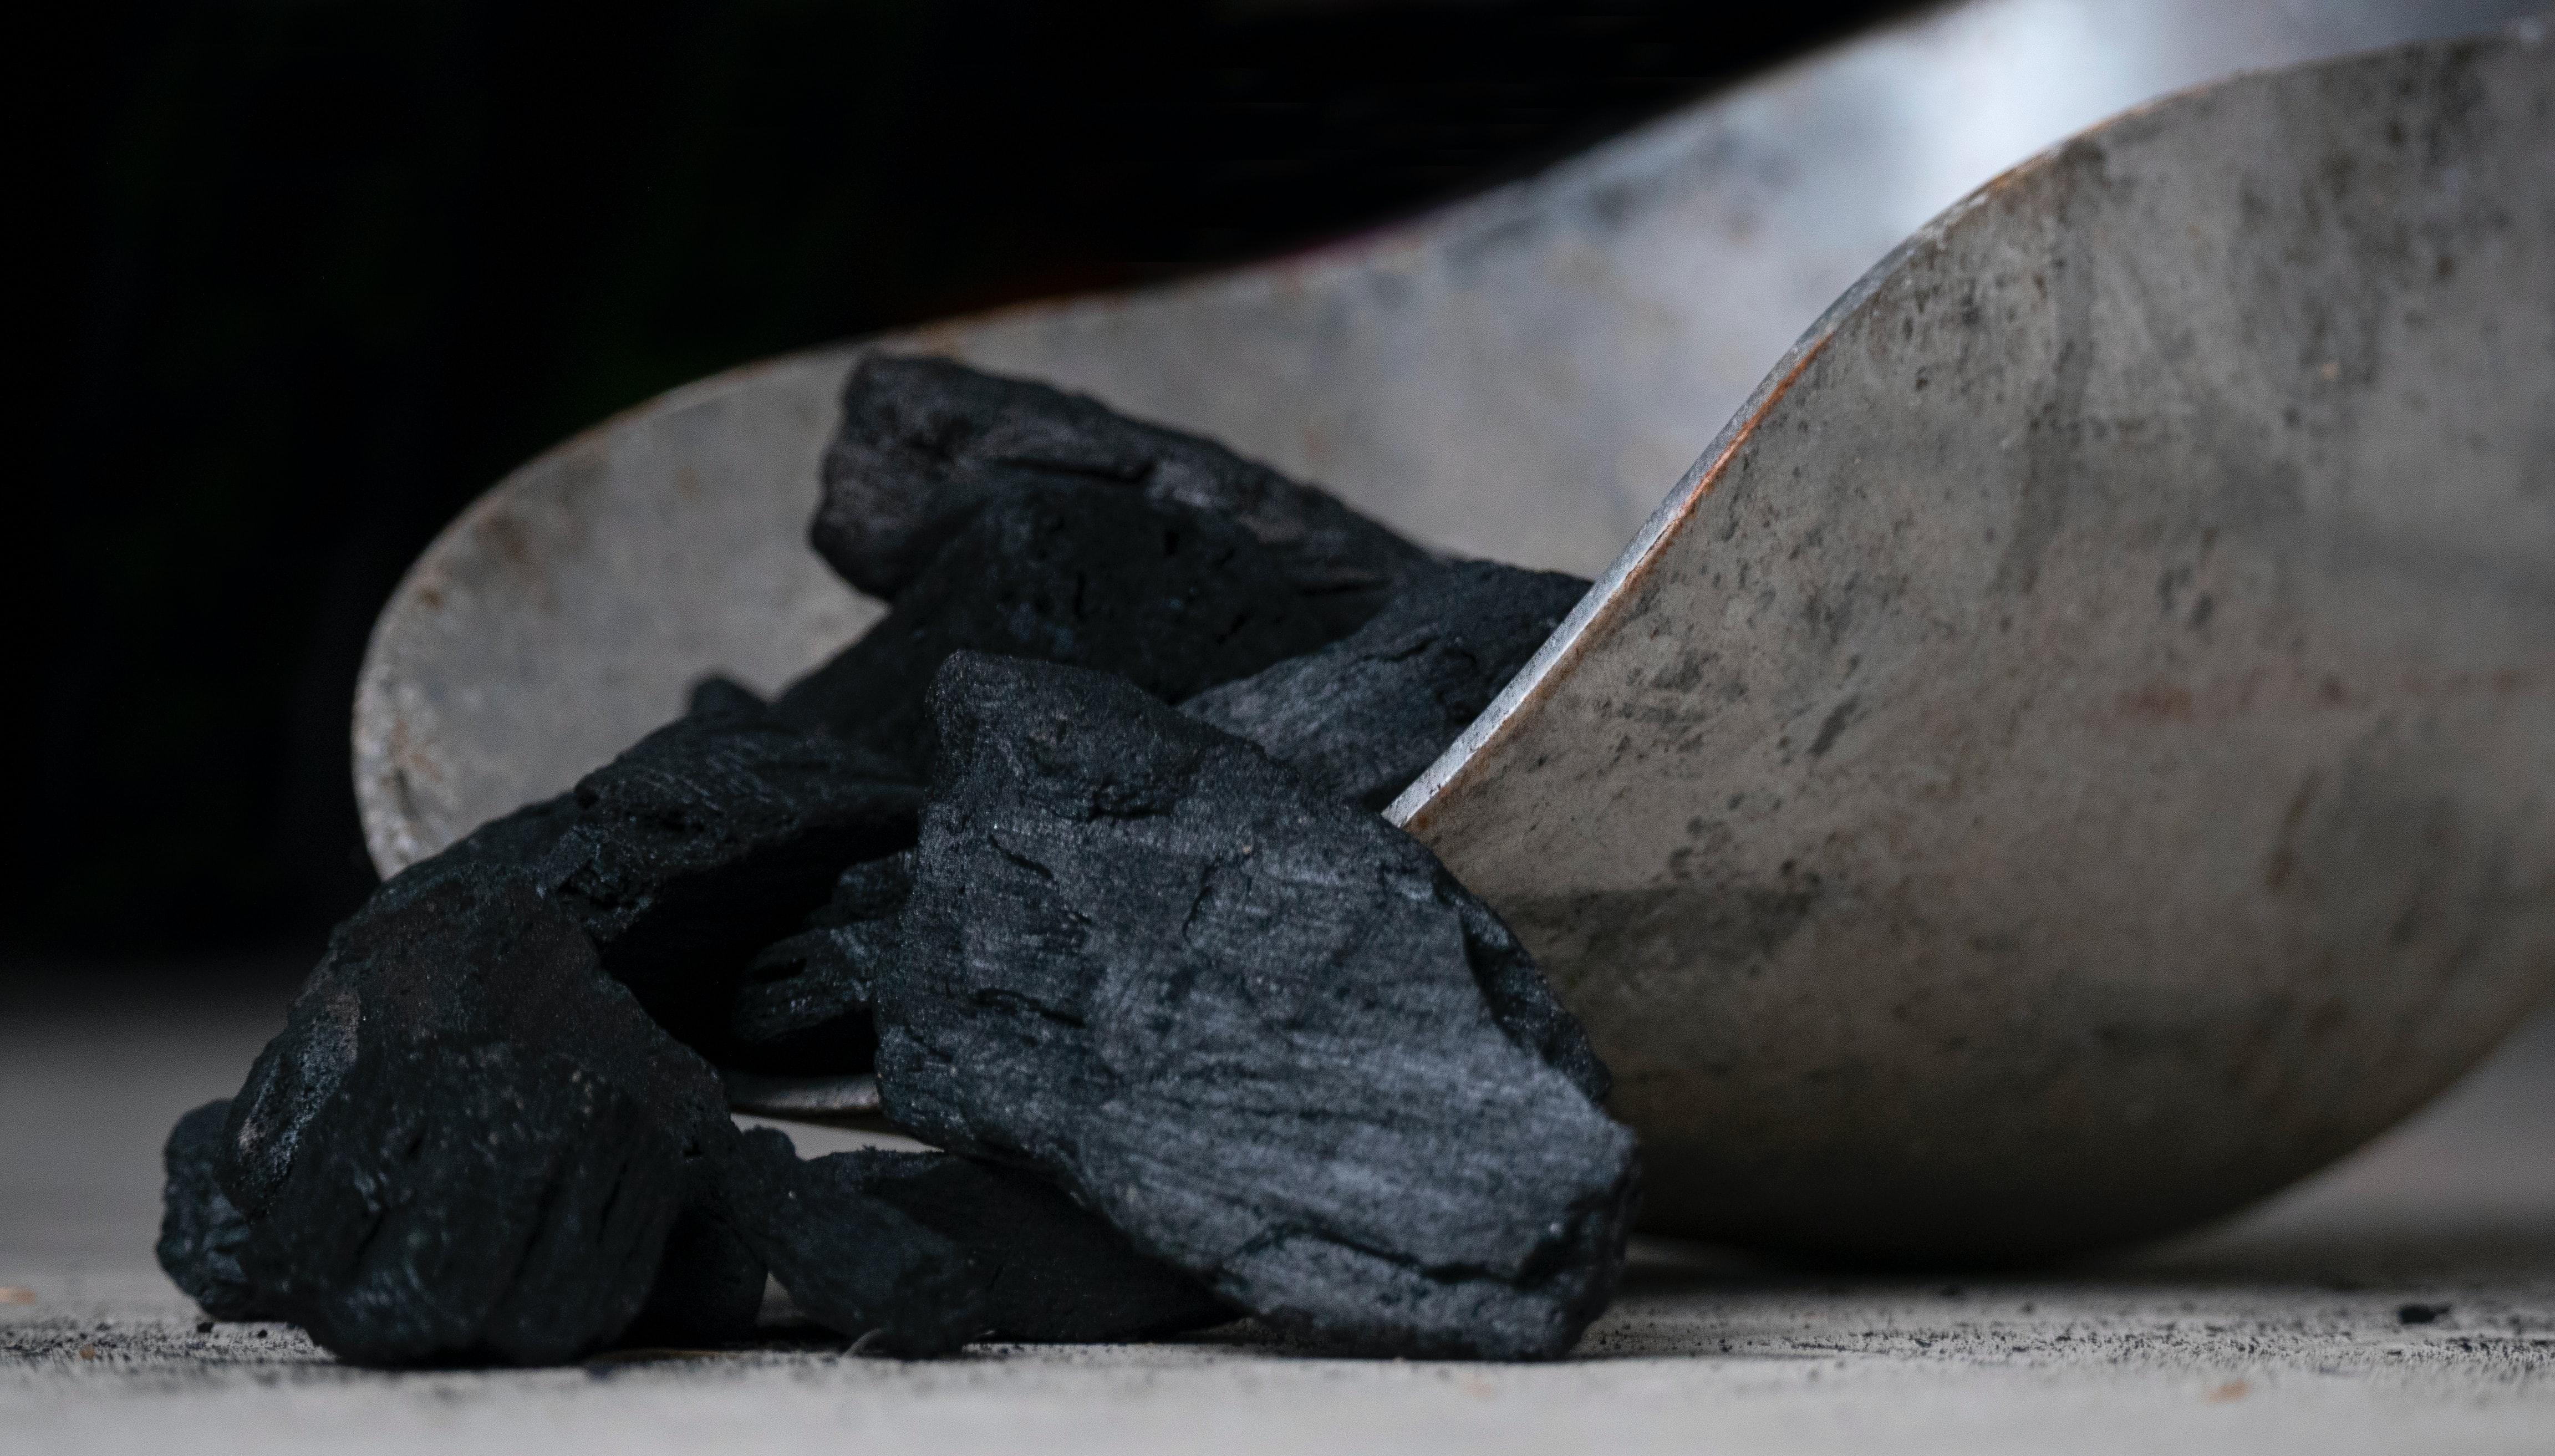 Запаси вугілля на складах ТЕС впали нижче 500 тисяч тонн: дані Міненерго - Економічні новини України - Економіка